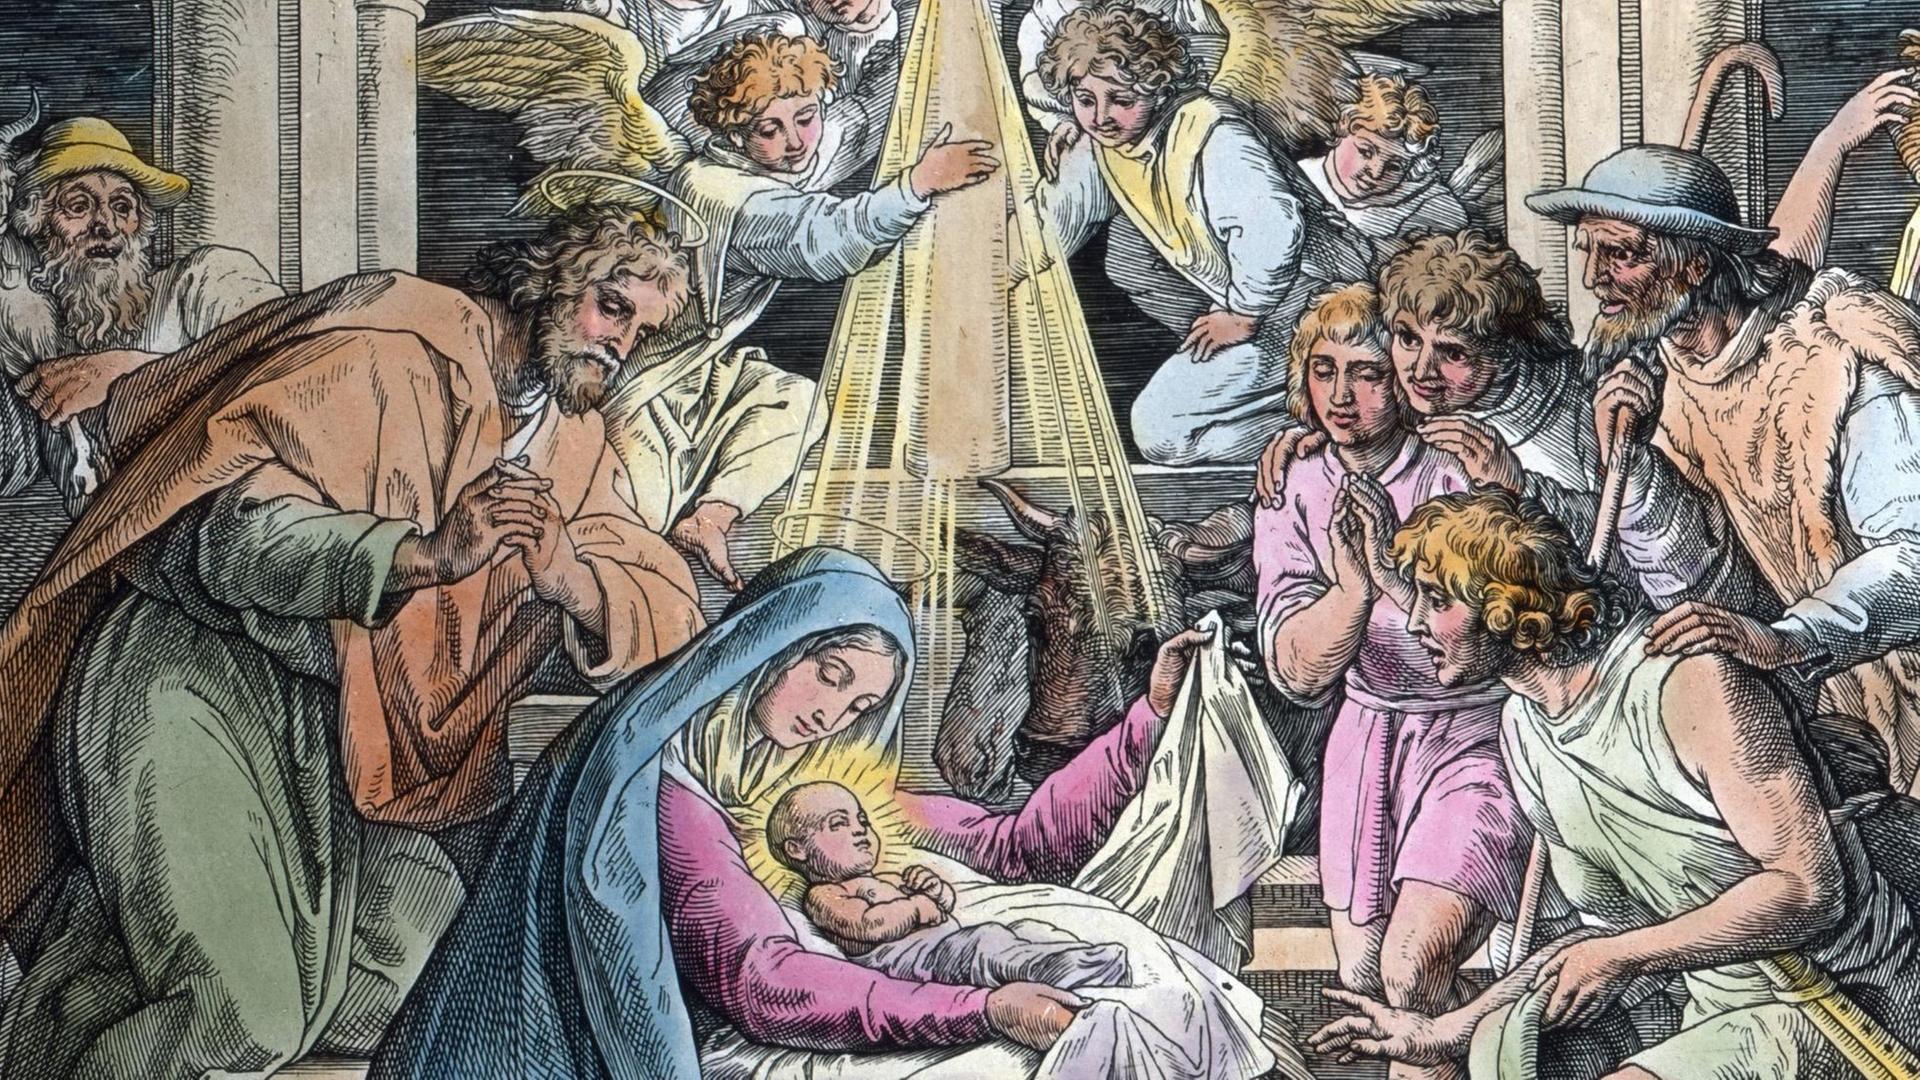 Eine historische Illustration von Jesus in der Krippe im Stall, links sitzt Maria, beide sind umgeben von Menschen und Engeln